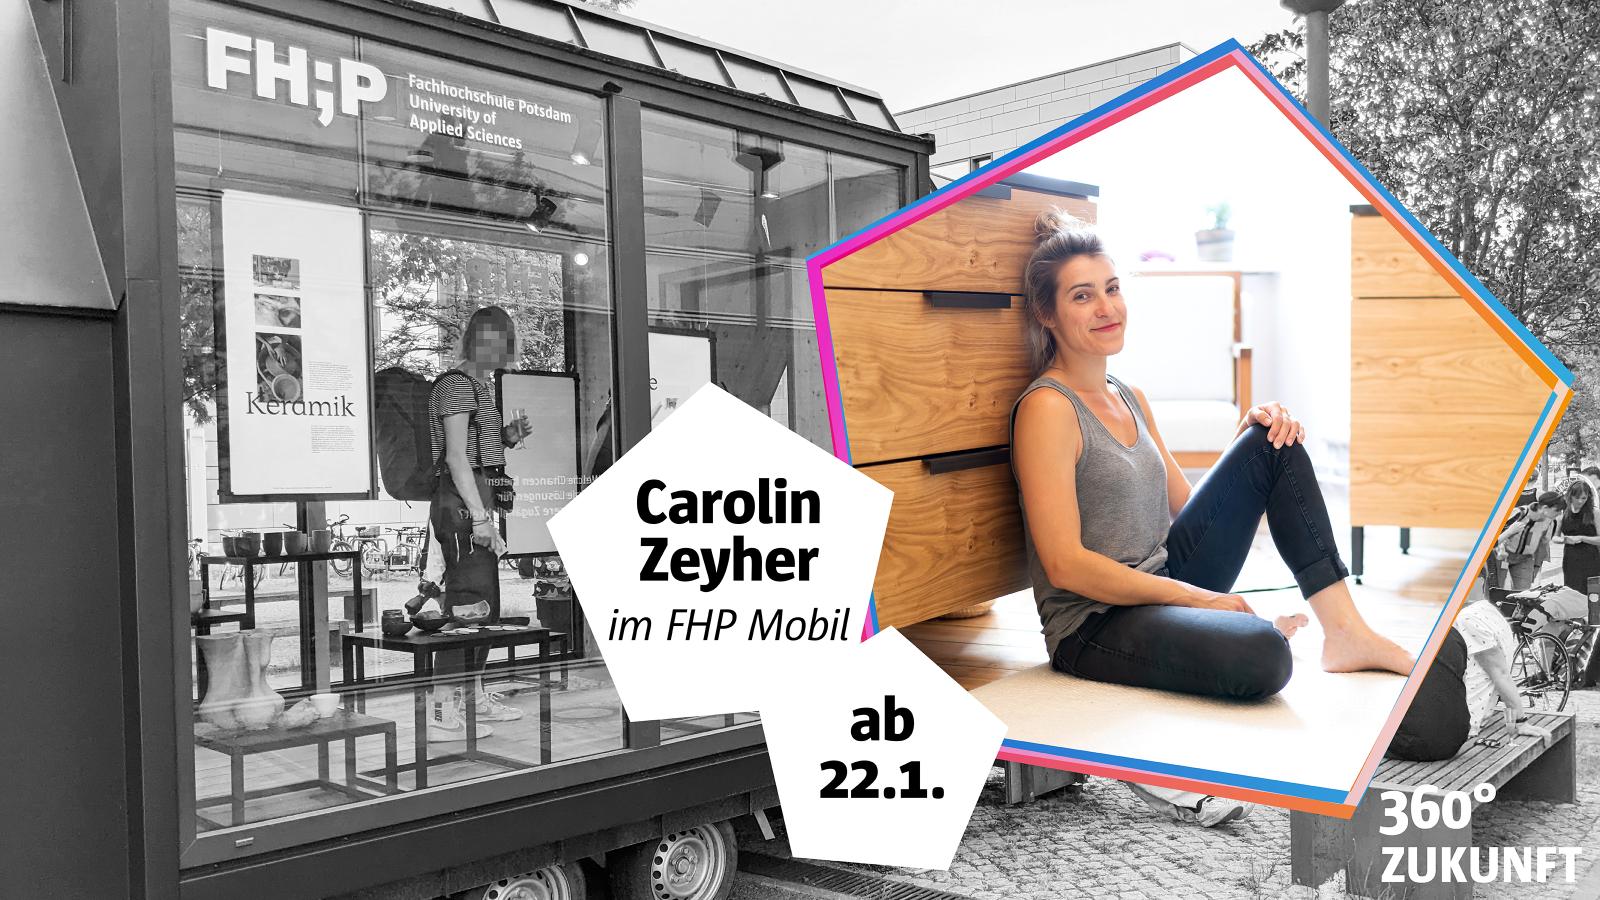 Collage aus dem FHP Mobil in Schwarzweiß und Gründerin Carolin Zeyher als farbiges Porträtfoto